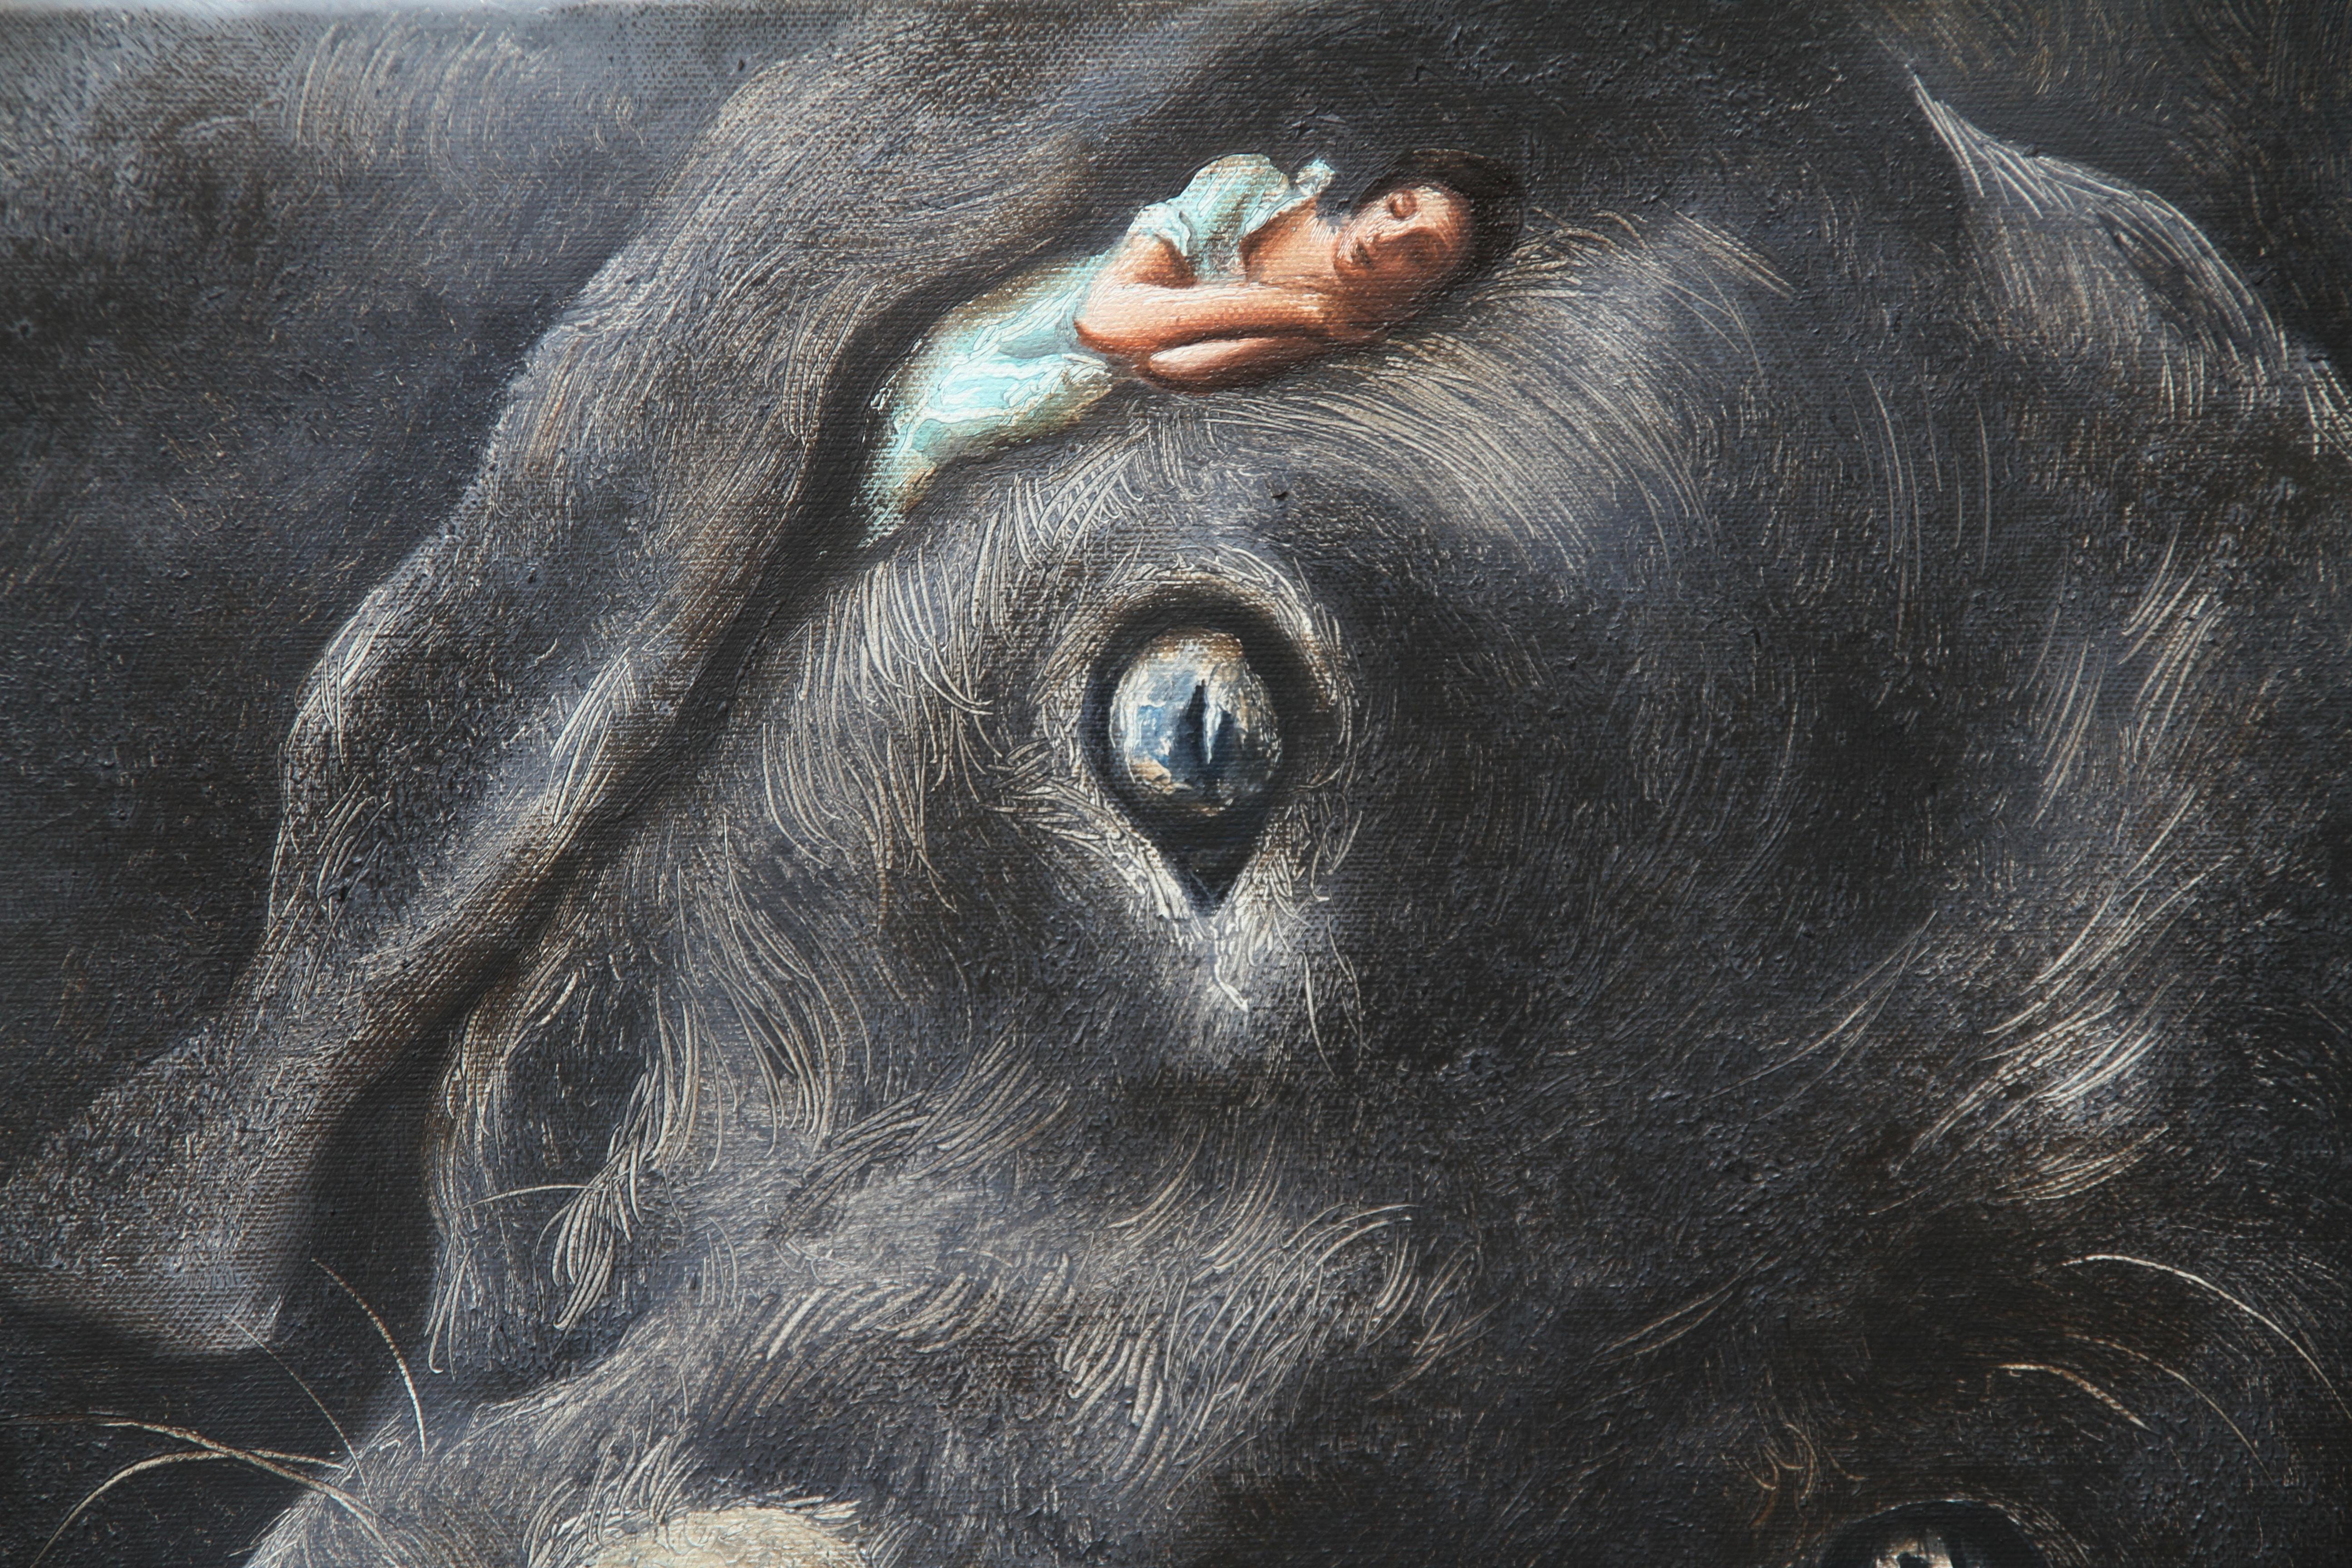 Propriétaire (chien labrador noir, femme endormie, robe vintage, animal, peinture surréaliste) - Surréalisme Painting par Rudolf Kosow